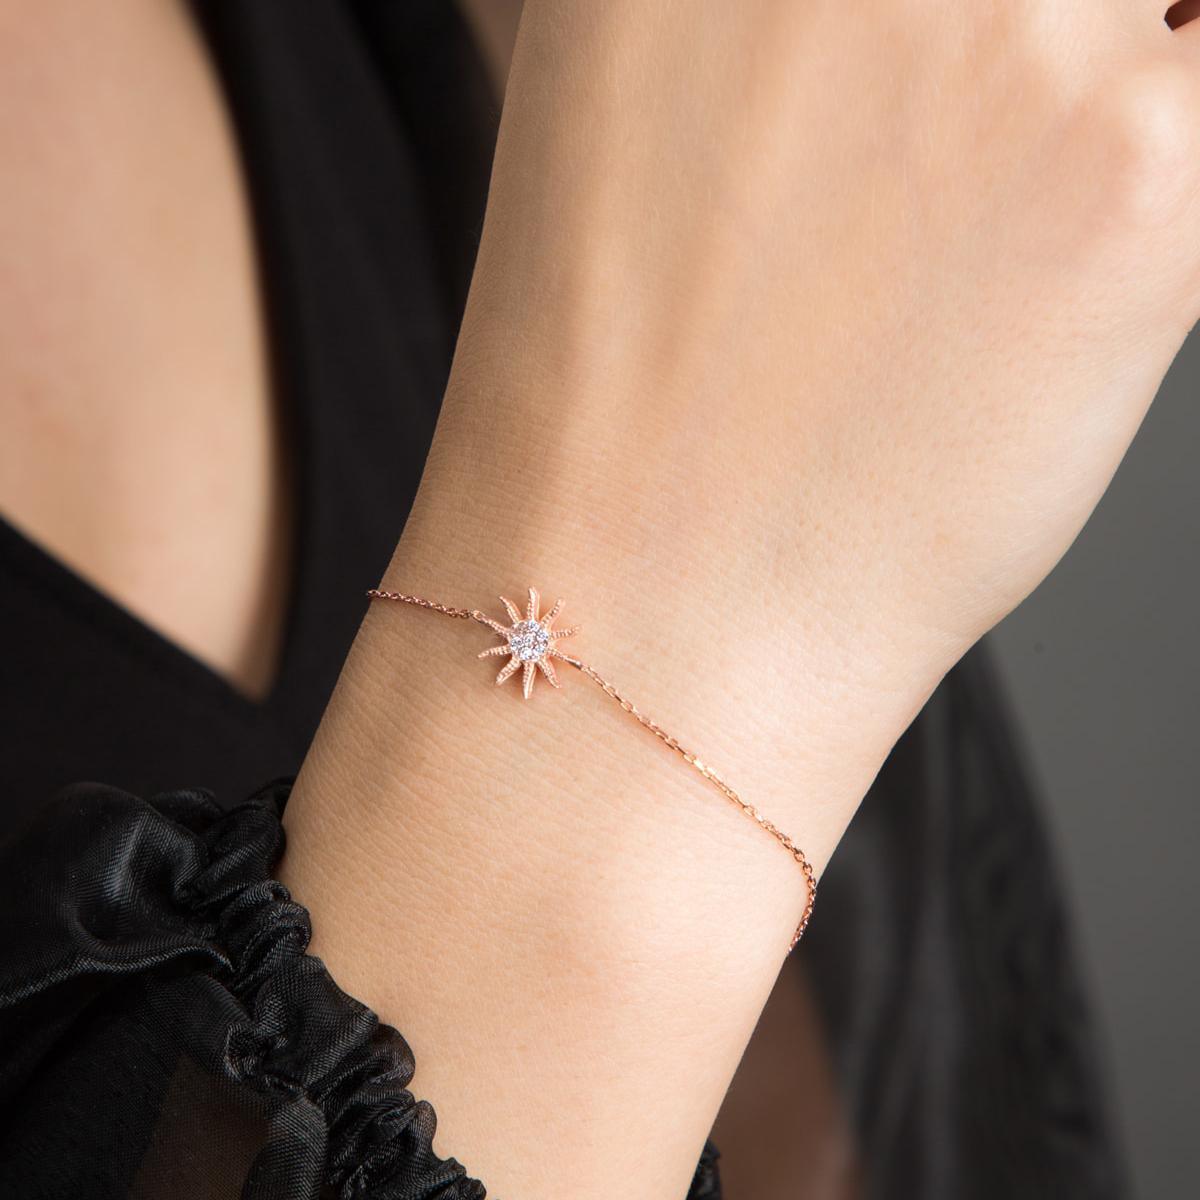 Sun Bracelet Charm • 925 Sun Bracelet • Bridesmaid Gift For Wedding - Trending Silver Gifts